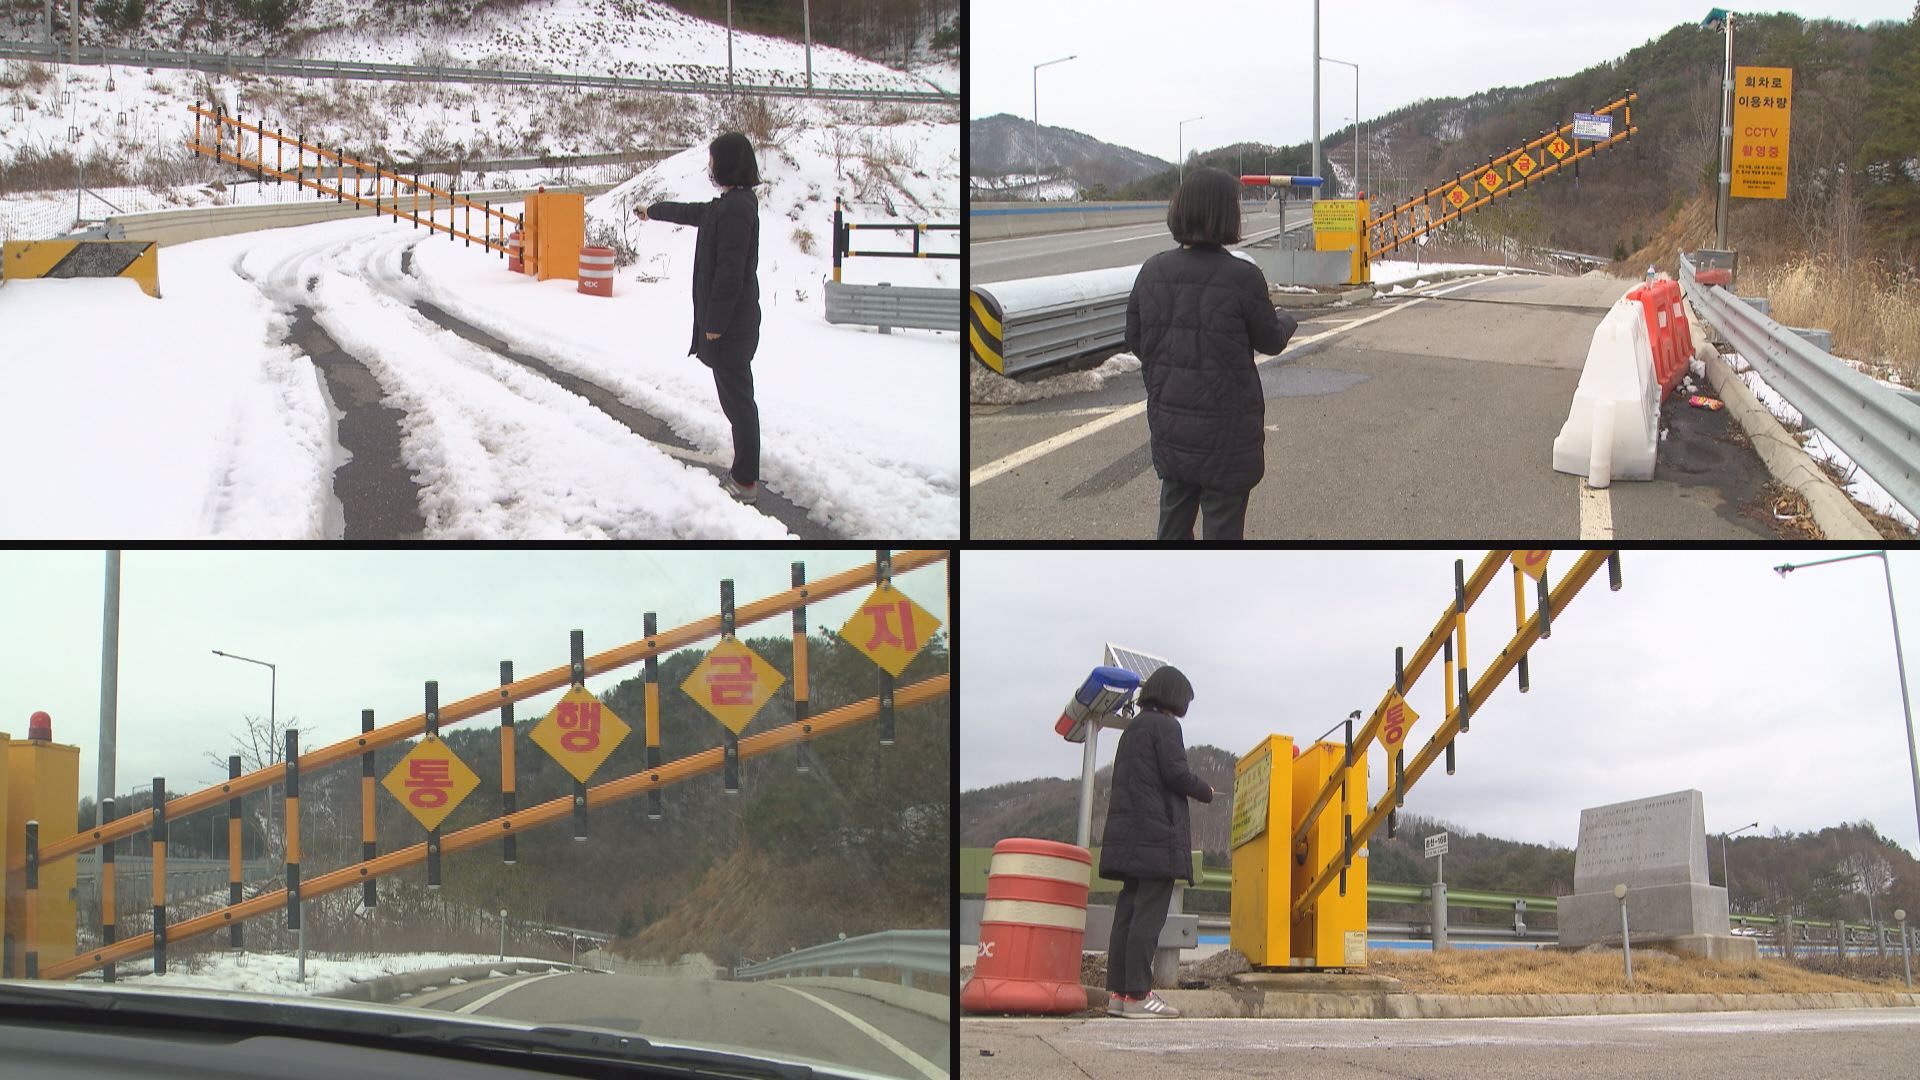  취재진이 서울양양고속도로 비상회차로 6곳을 무작위로 골라 리모컨 개폐 시험을 하고 있다. 6곳 모두 리모컨 1대로 문이 열리고 닫혔다. 